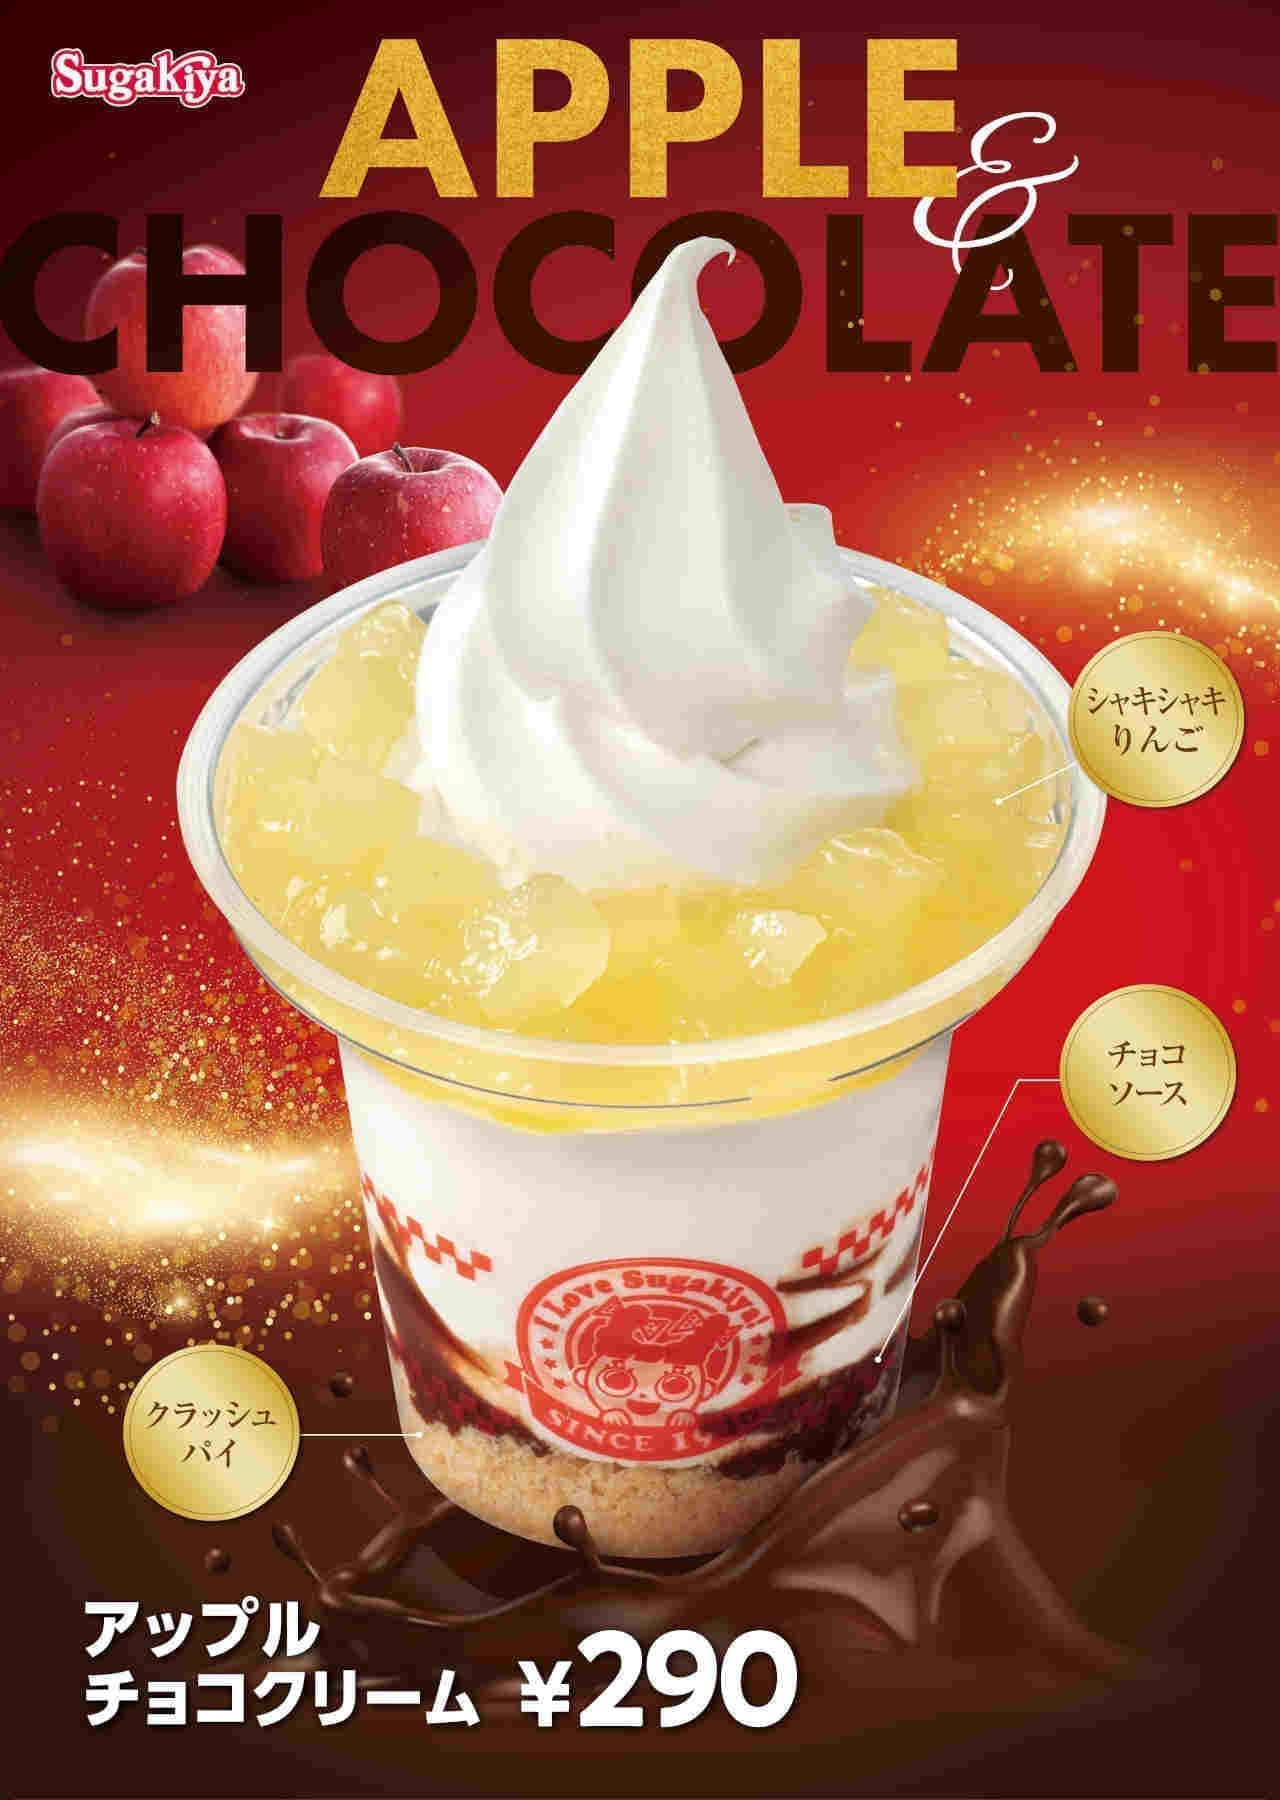 Sugakiya "Apple Chocolate Cream